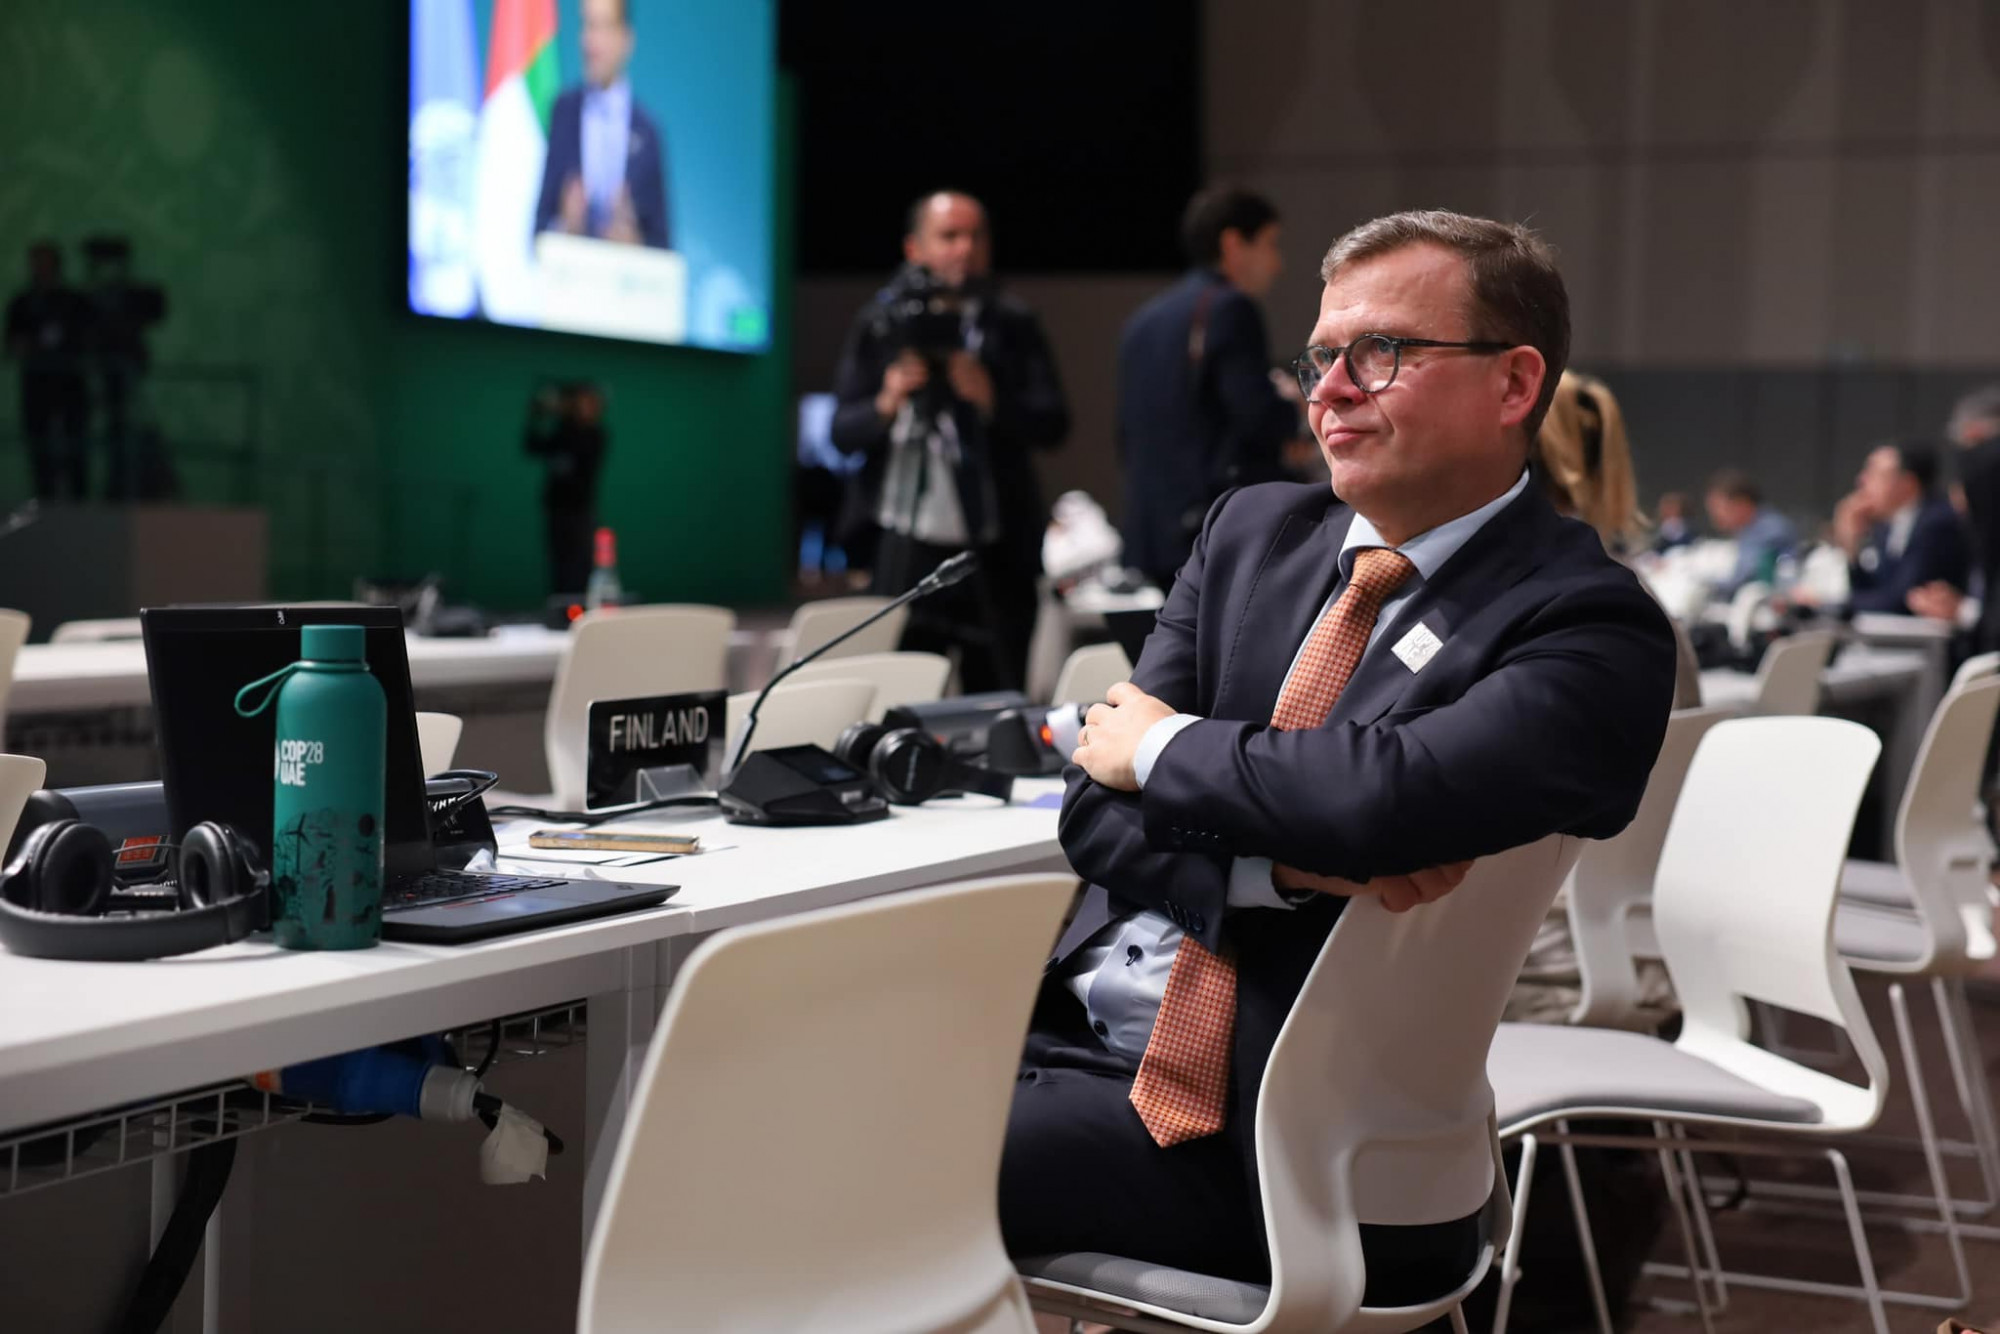 Finn kormányfő: Elfogadhatatlan, amit Orbán tesz, úgy tűnik, szándékosan segíti Putyint